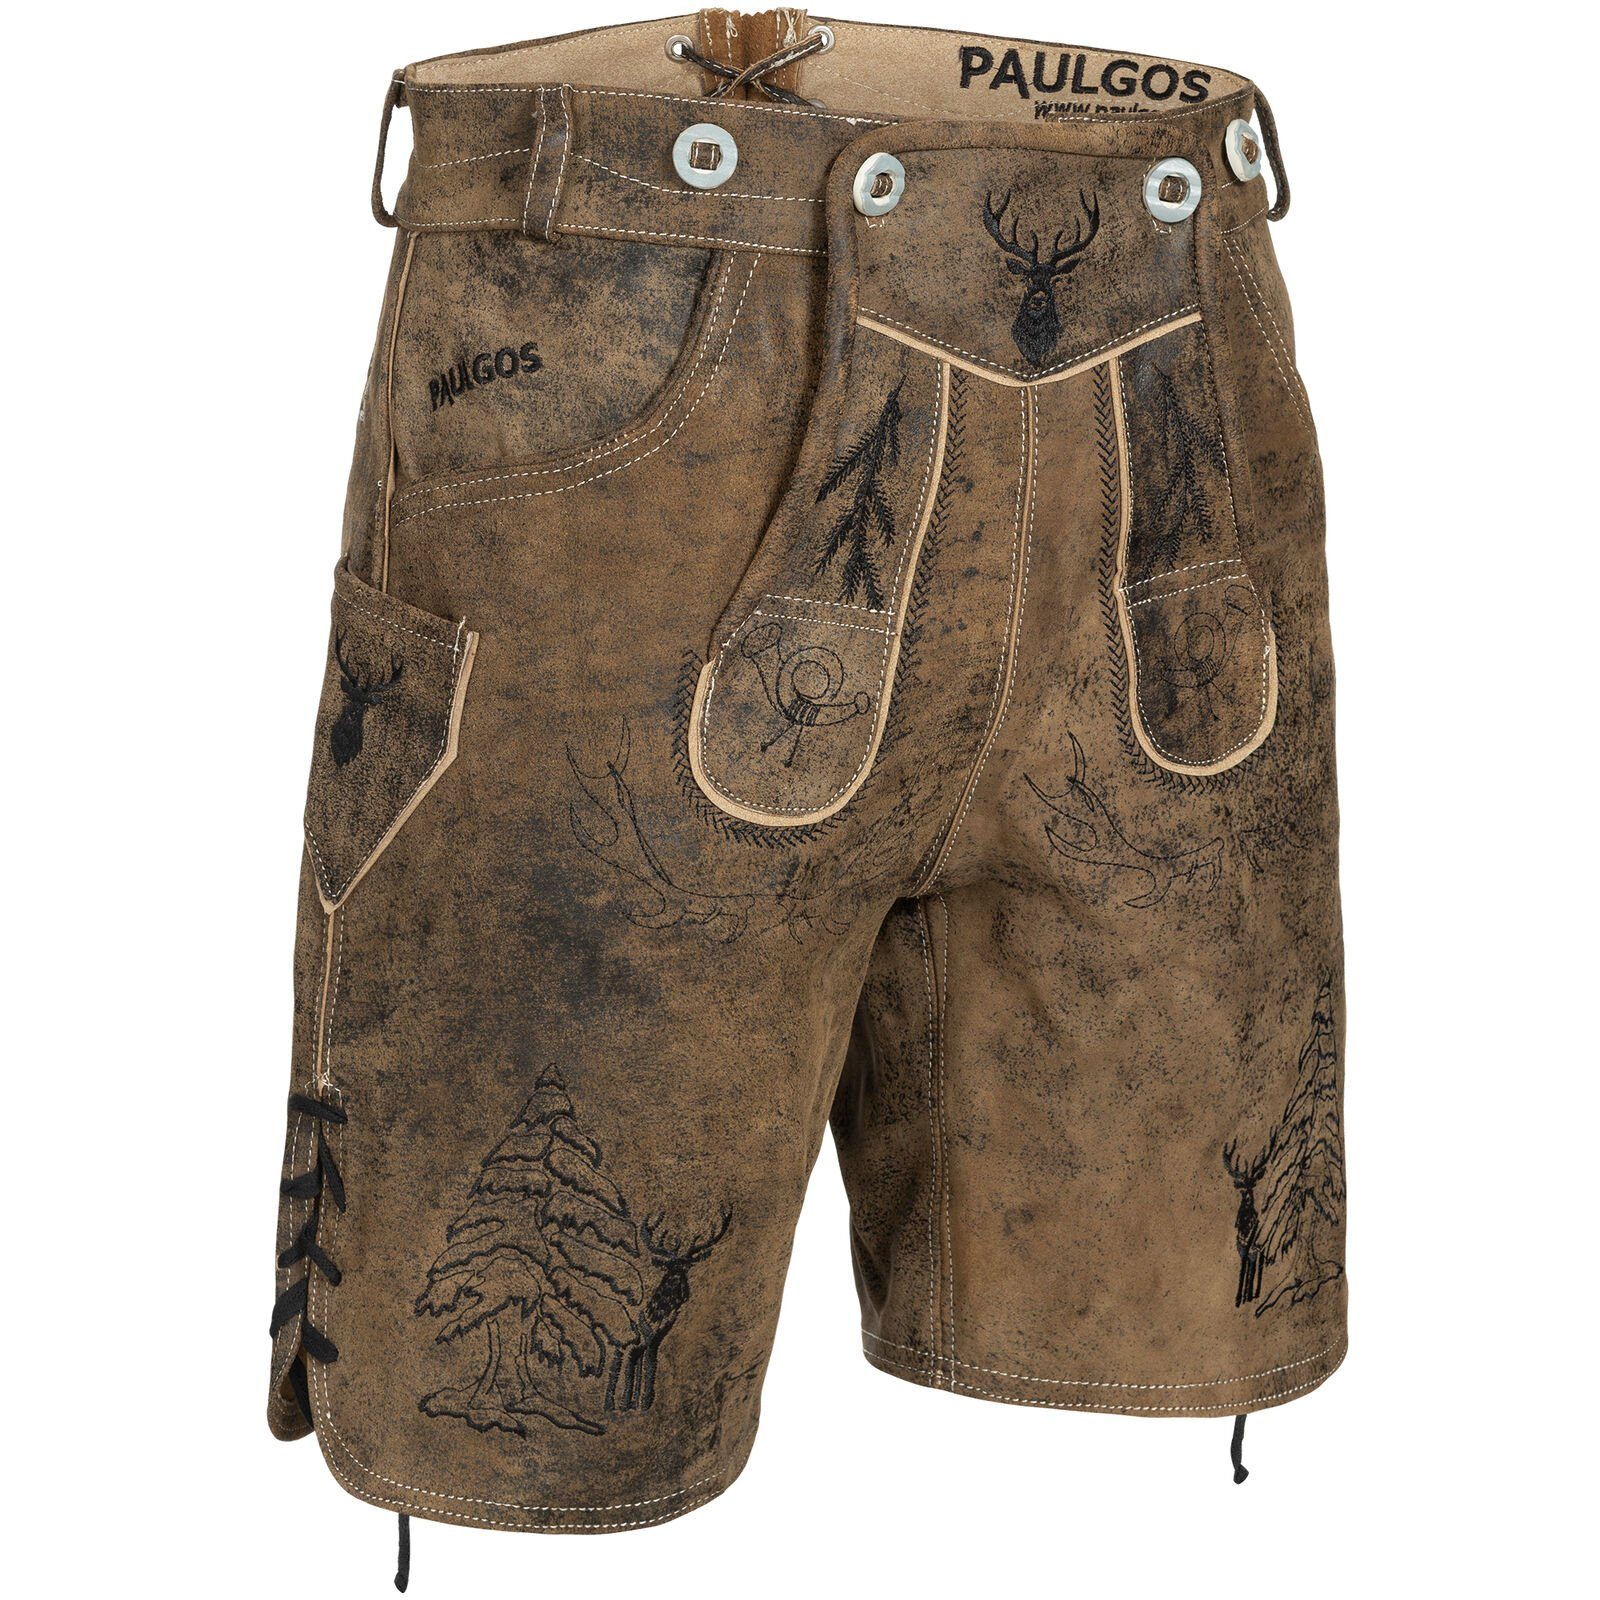 PAULGOS Trachtenhose »PAULGOS Herren Trachten Lederhose kurz - HK5 ANTIK -  Echtes Leder - in 3 Farben erhältlich - Größe 44 - 60« online kaufen | OTTO